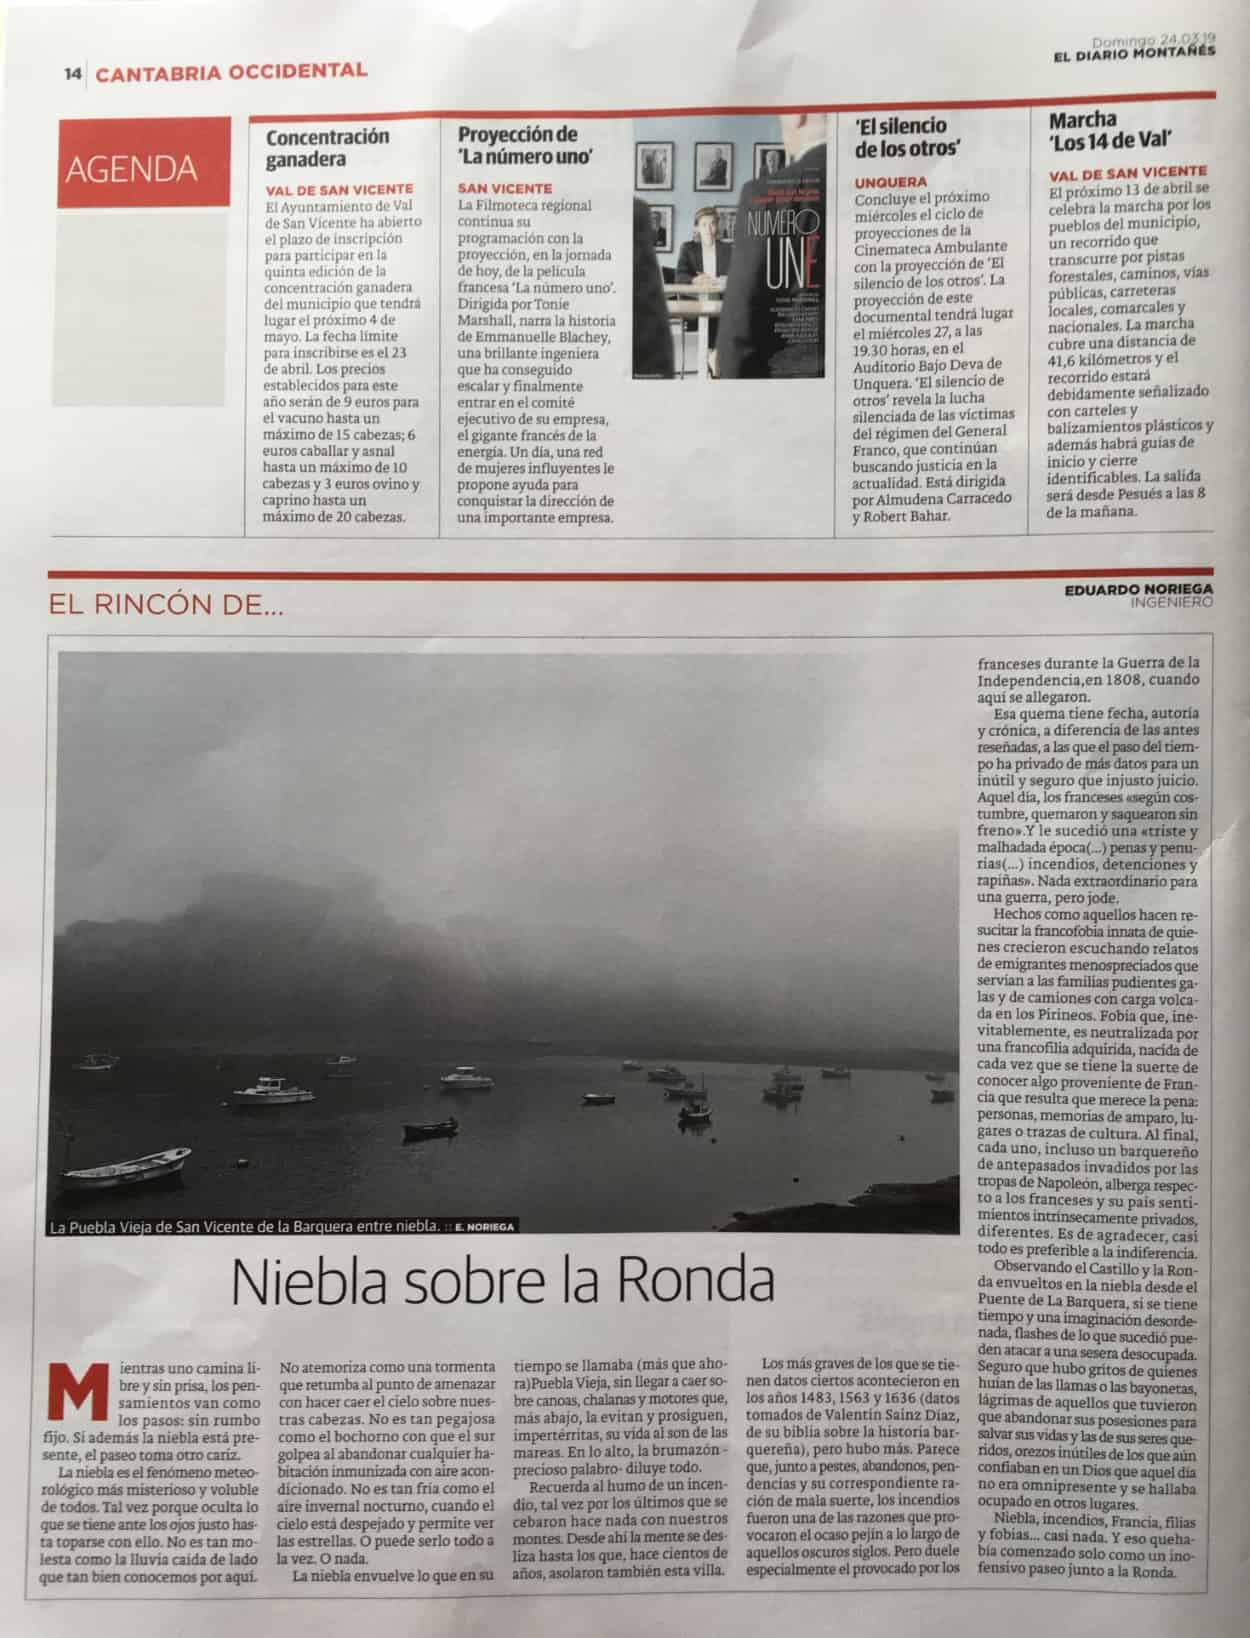 02-Niebla-sobre-la-Ronda-El-Diario-Montanes